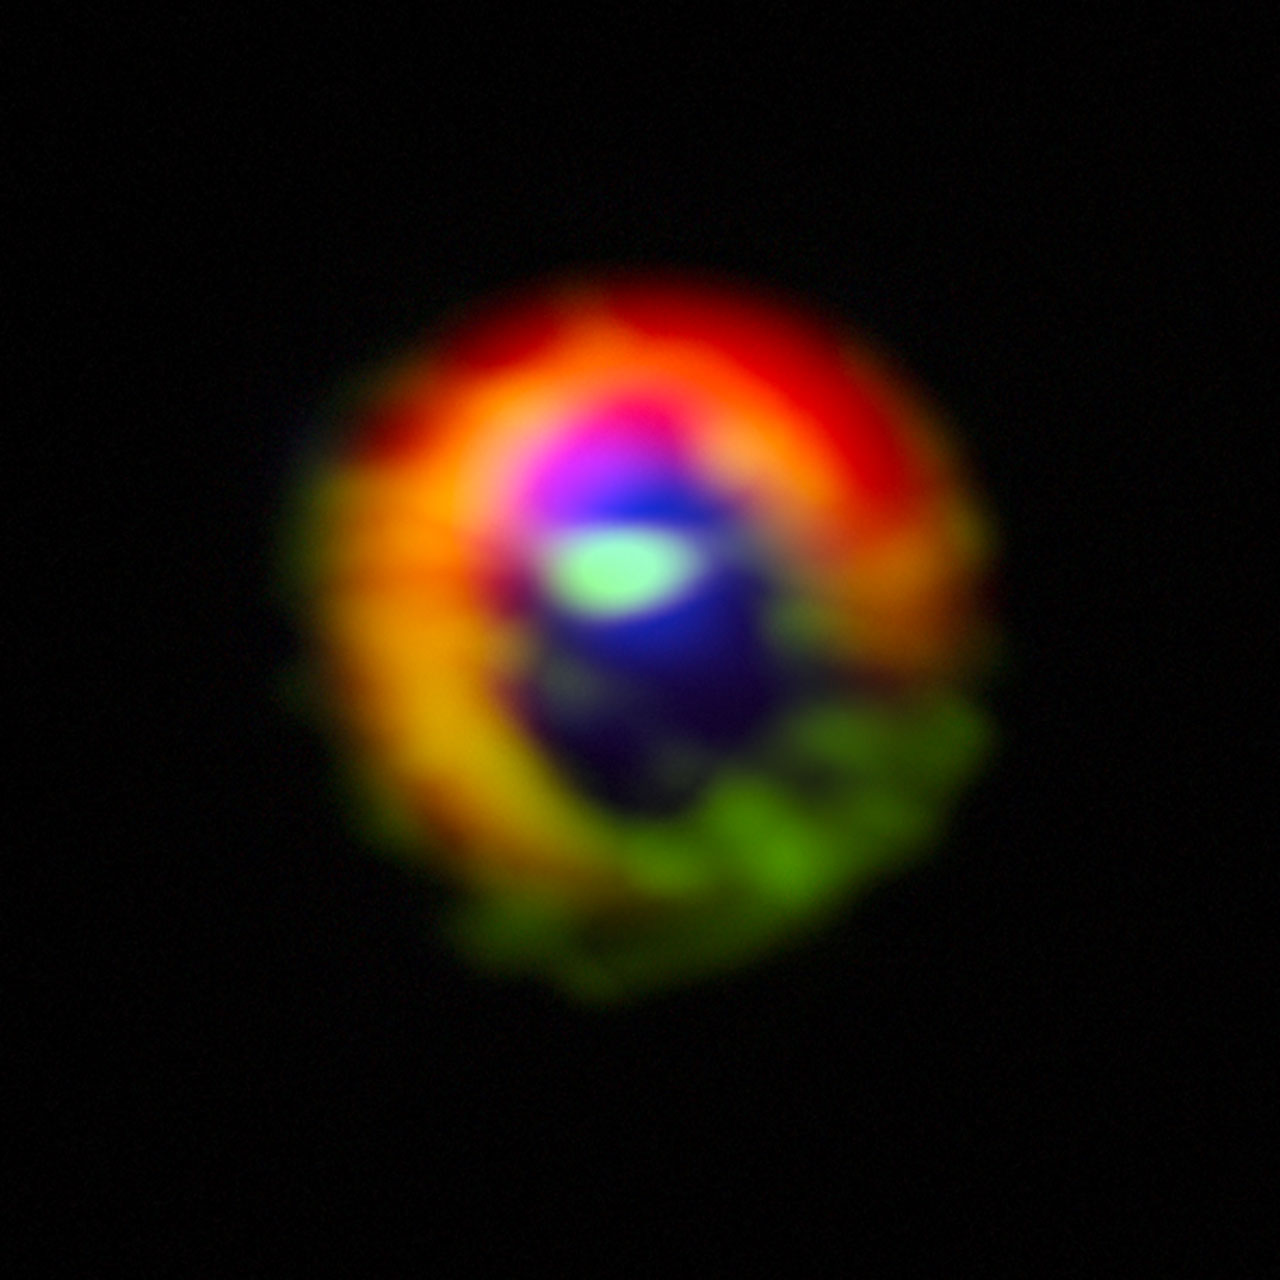 Les observations effectuées avec le télescope Alma du disque de gaz et de poussière cosmique autour de la jeune étoile HD 142527 montrent d'importants écoulements de gaz à travers un espace vide dans le disque. Il s'agit des premières observations directes de tels écoulements, que l'on suppose être engendrés par la consommation de gaz des planètes géantes au cours de leur croissance, et qui constituent un moment clé de la naissance des planètes géantes. © Alma (ESO,&nbsp;NAOJ,&nbsp;NRAO), S. Casassus et al.